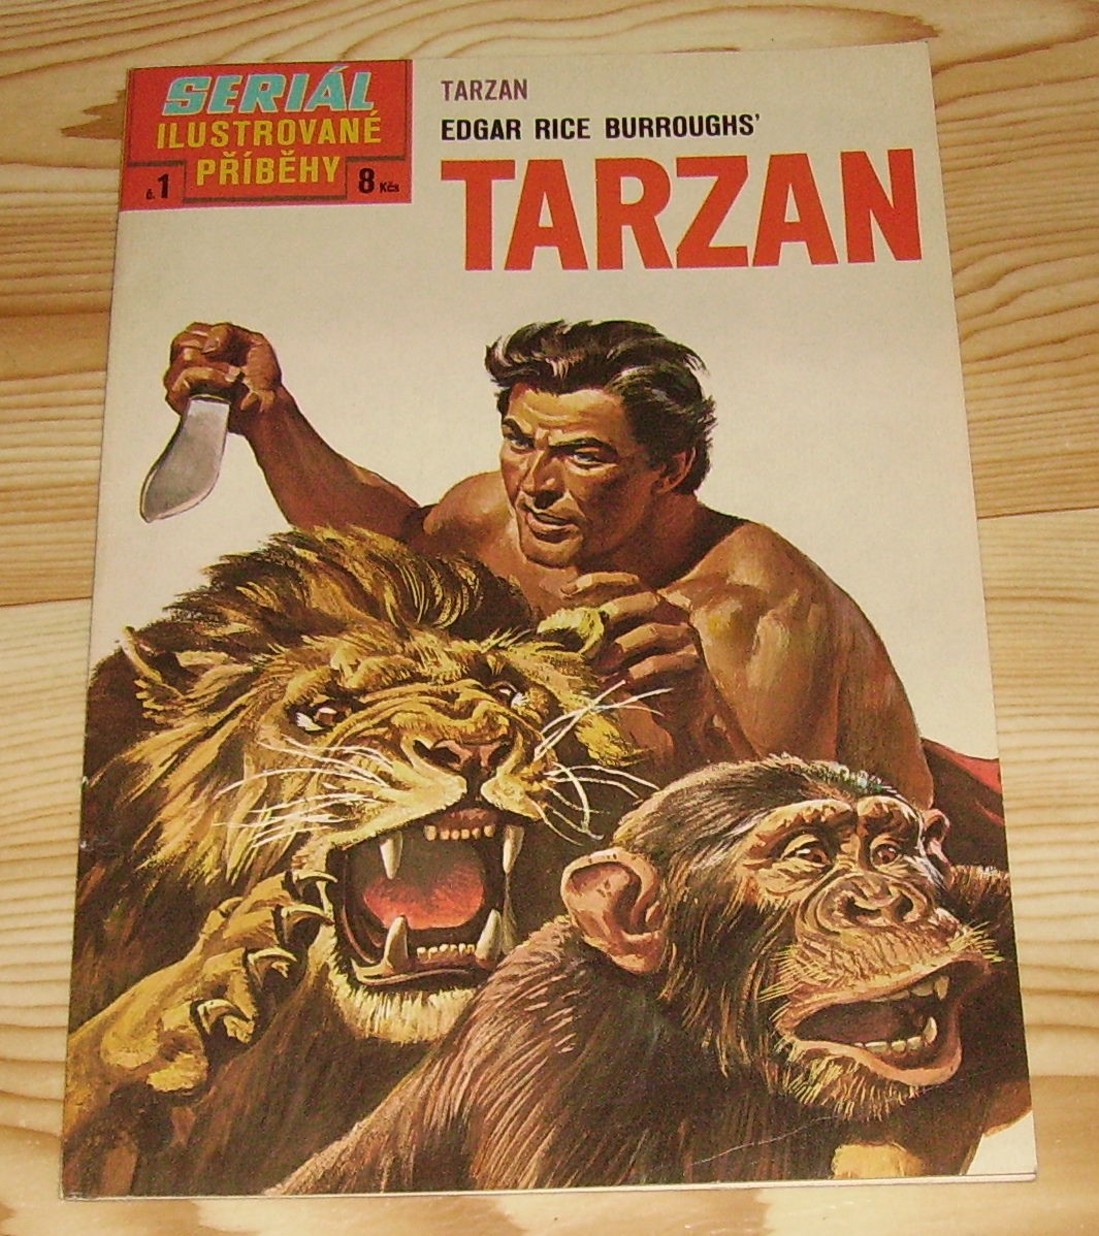 Seriál ilustrované příběhy 1: Tarzan 